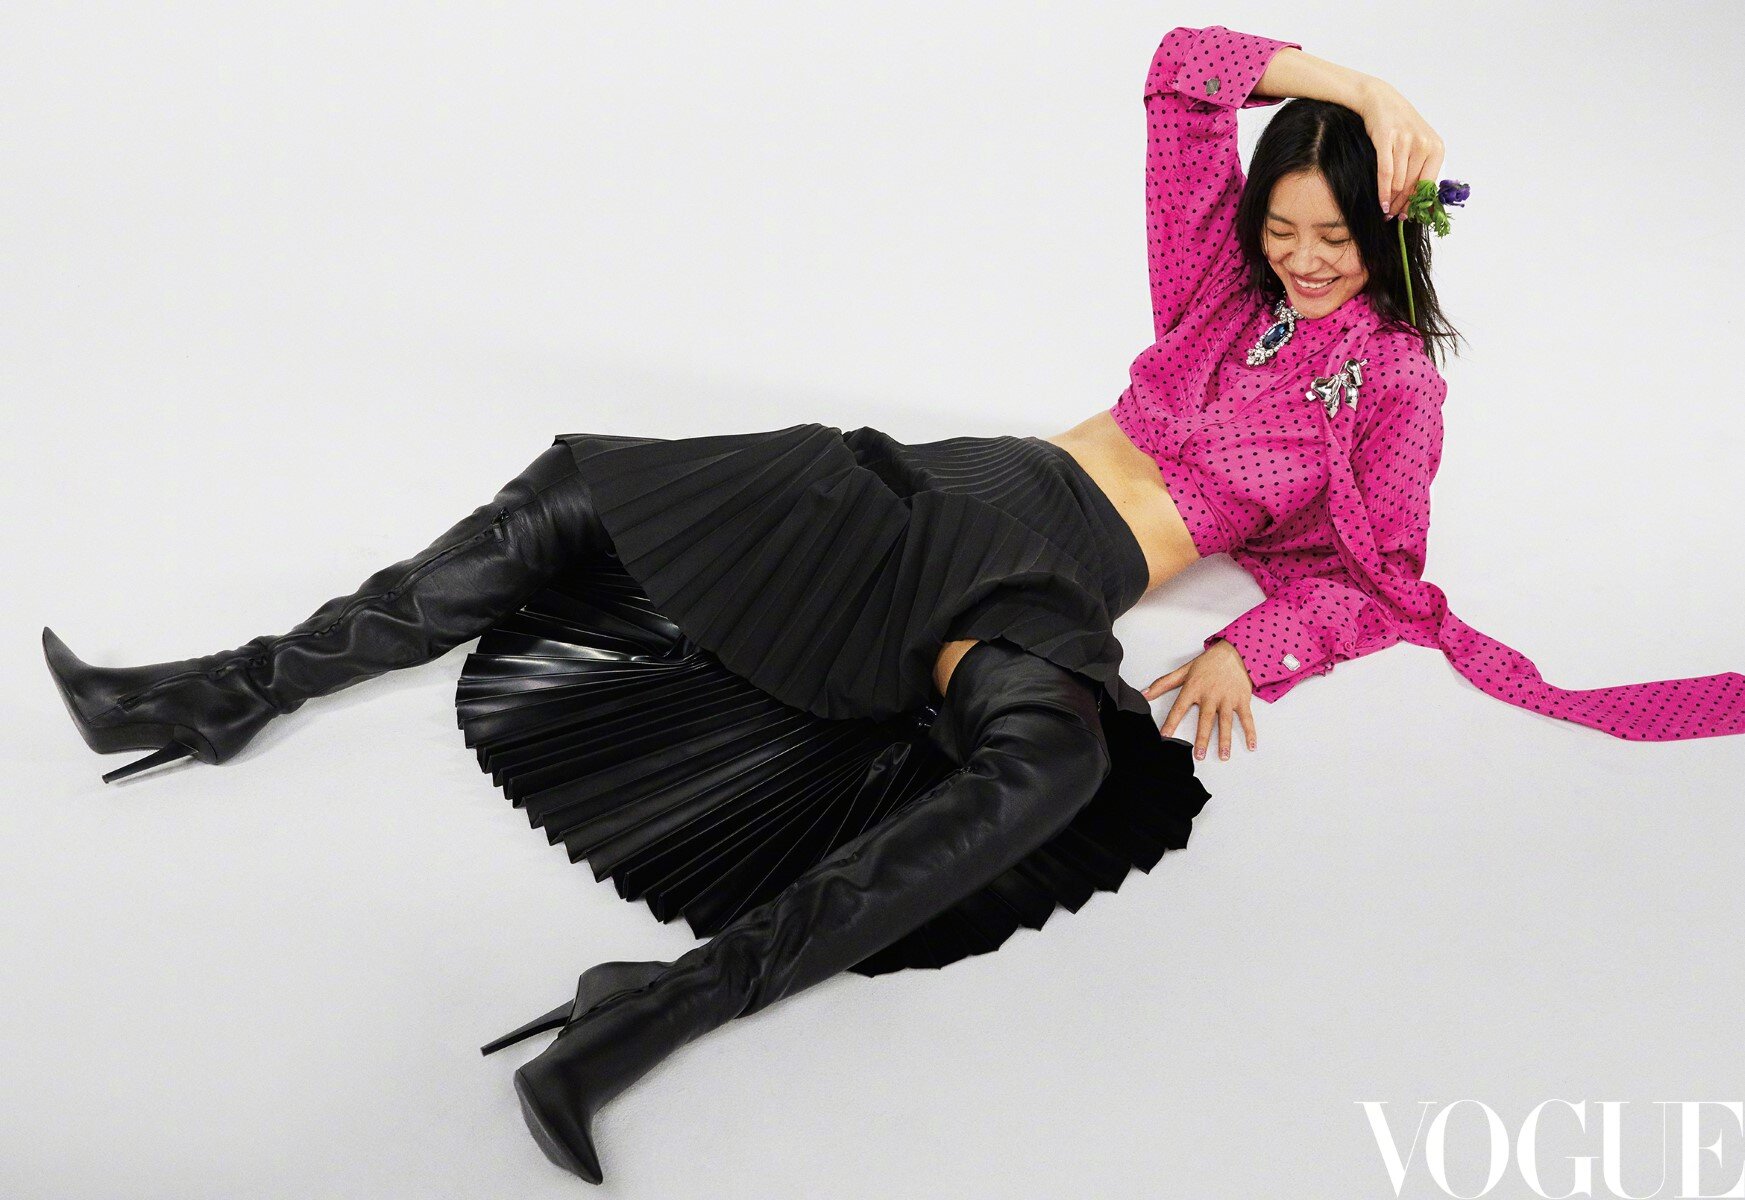 Carin Backoff by Carin Backoff for Vogue China Nov 2020 (2).jpg